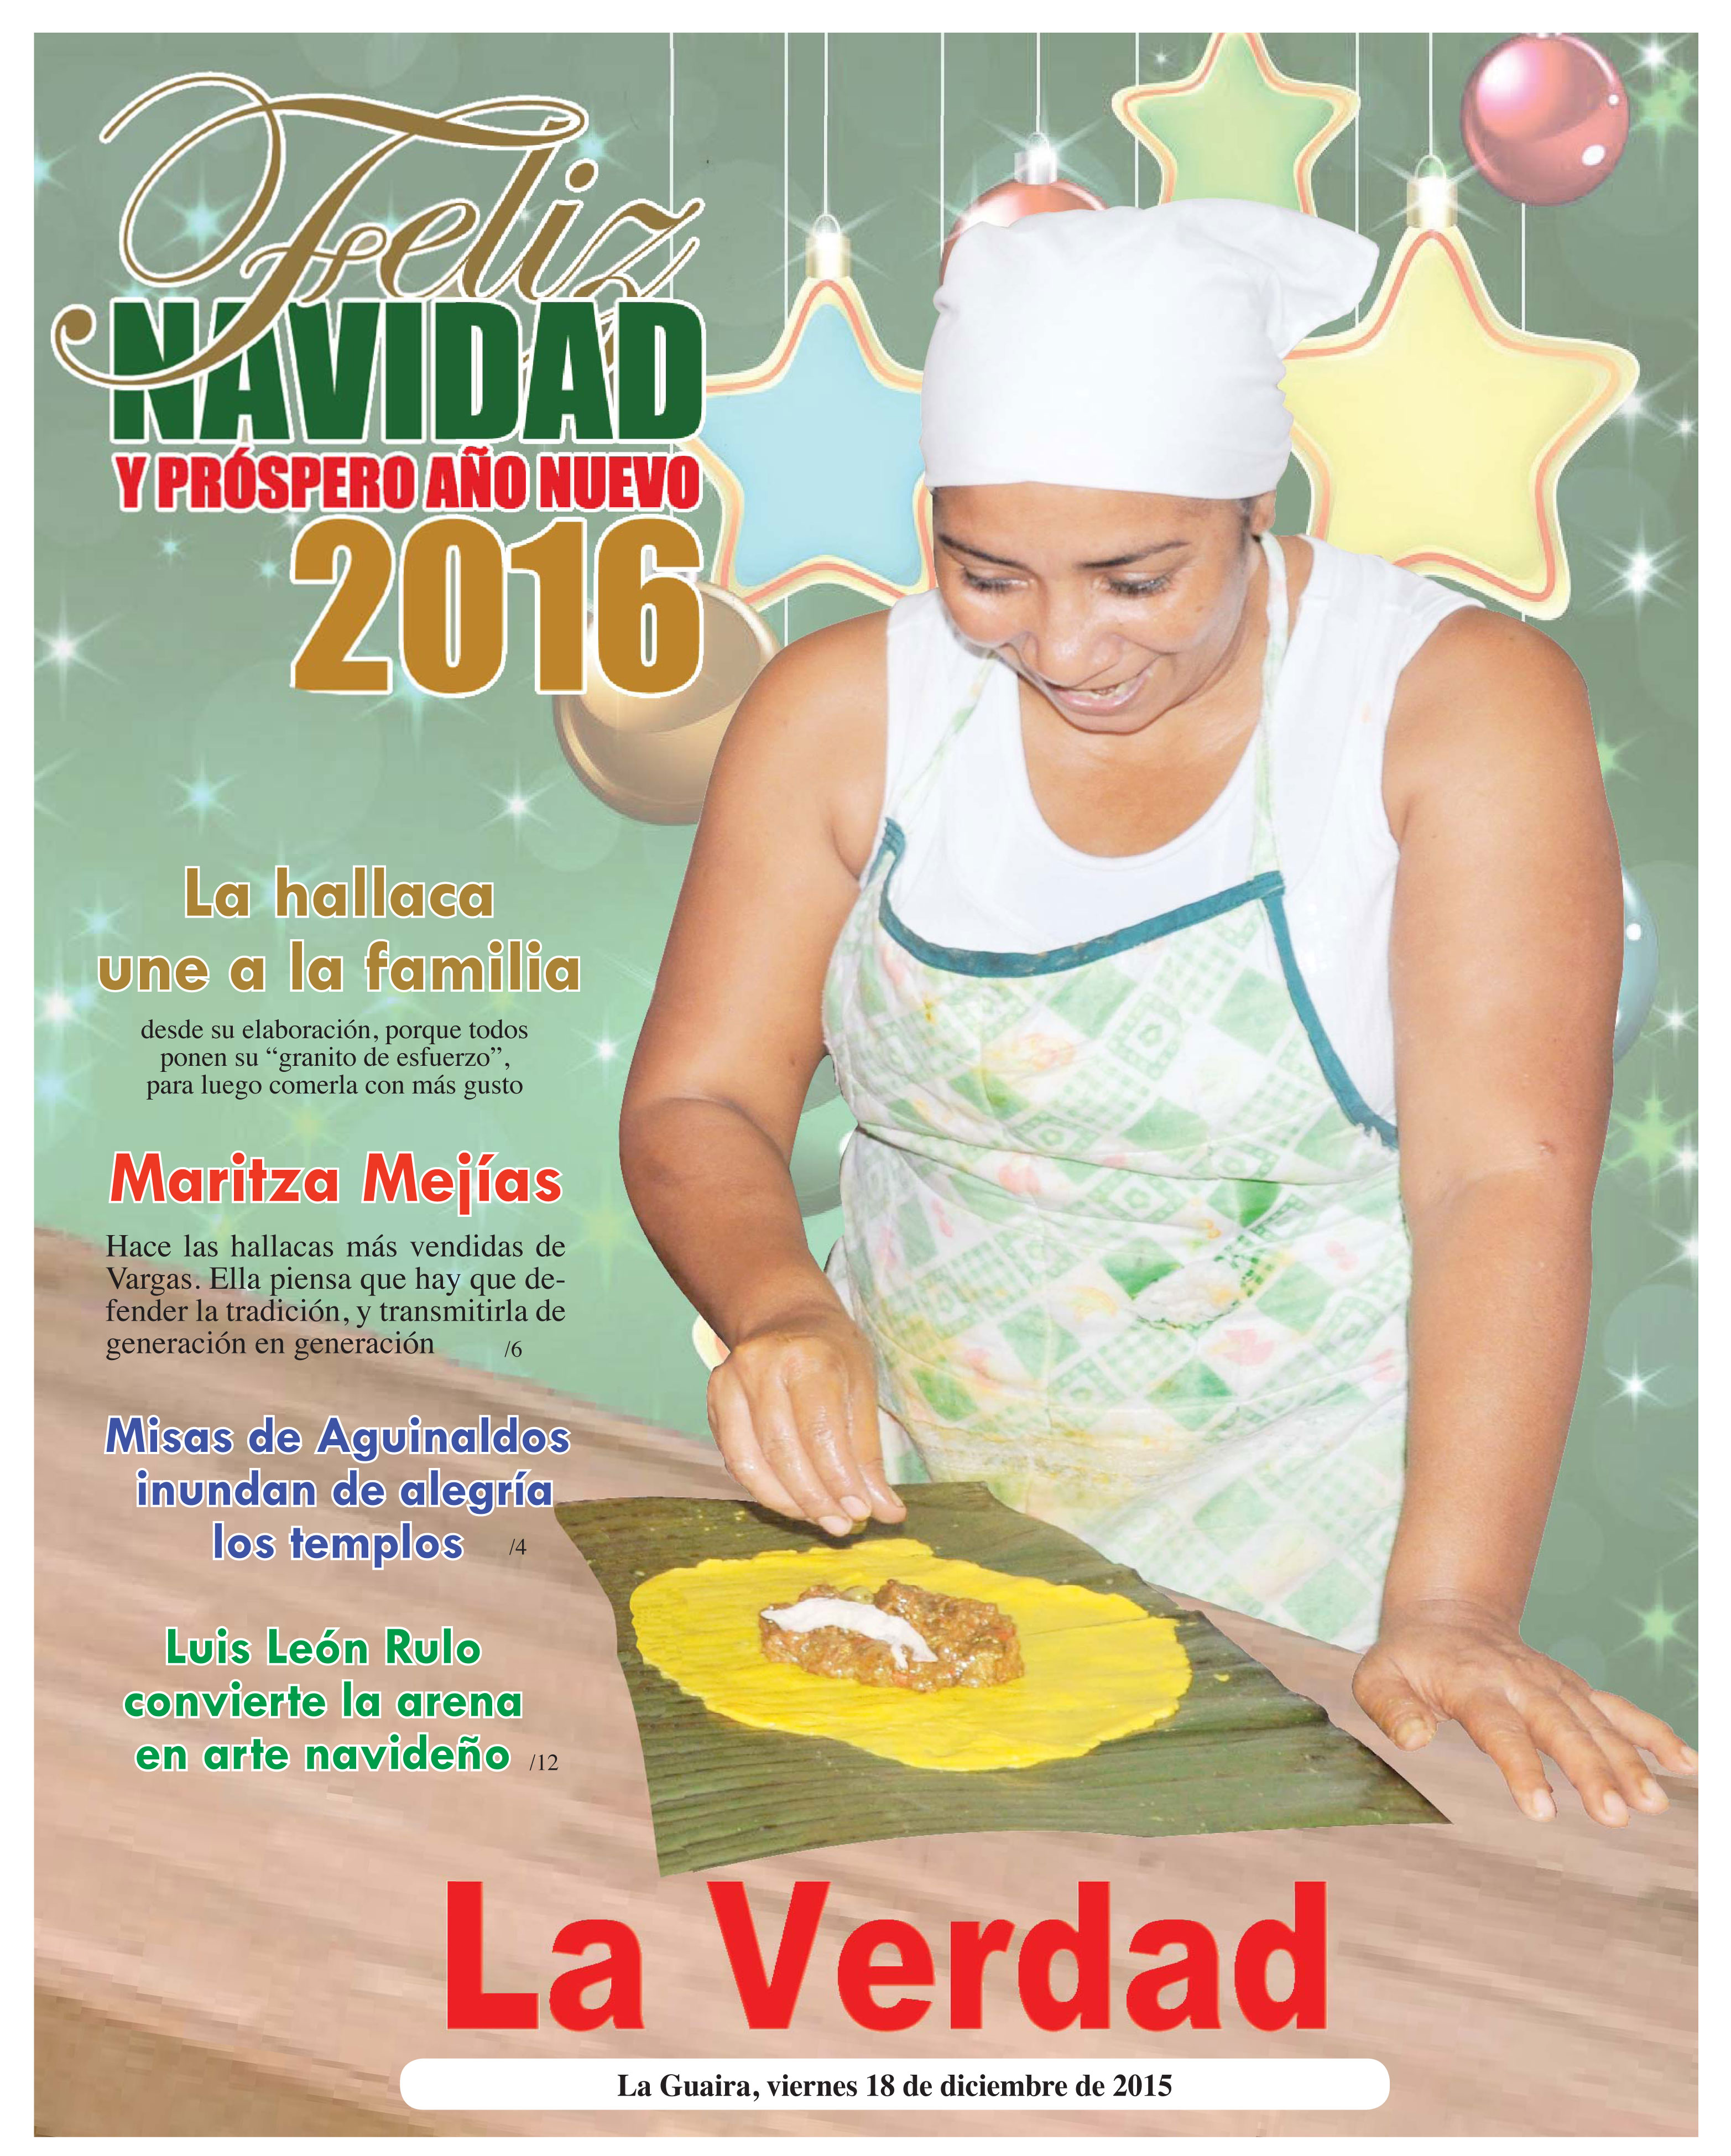 La Guaira, viernes 18 de diciembre de 2015 Edición Especial Navidad